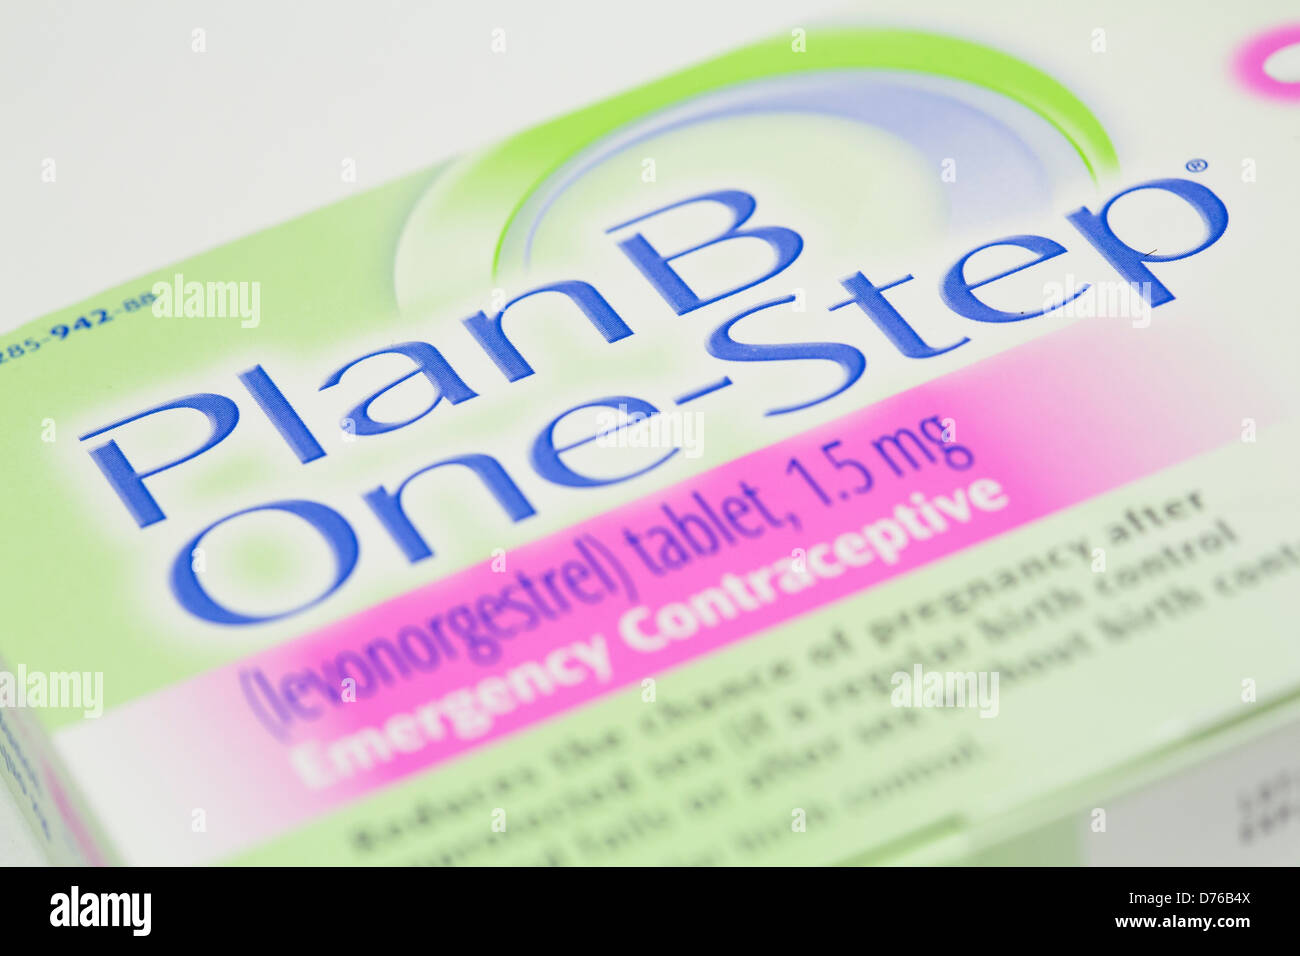 Un Plan B (levonorgestrel) pilule contraceptive d'urgence, également connu comme la "pilule du lendemain" Banque D'Images